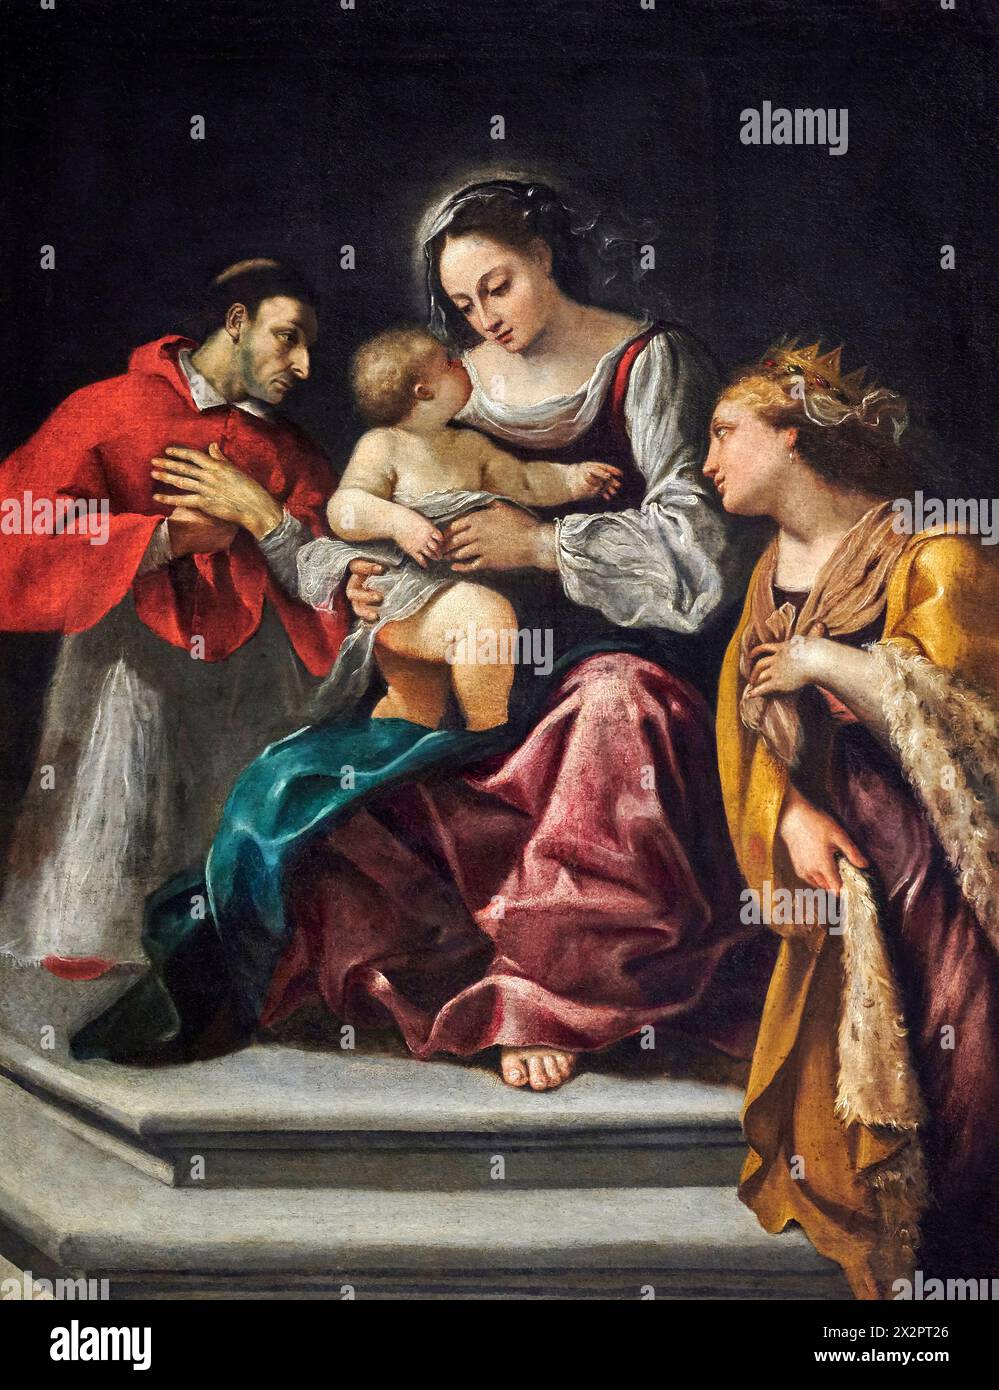 Matrimonio mistico di S. Caterina alla presenza di S. Carlo Borromeo - olio su tela - Emilio Savonanzi - 1624 - cento (Fe) Pinacoteca Civica Guerci Foto Stock